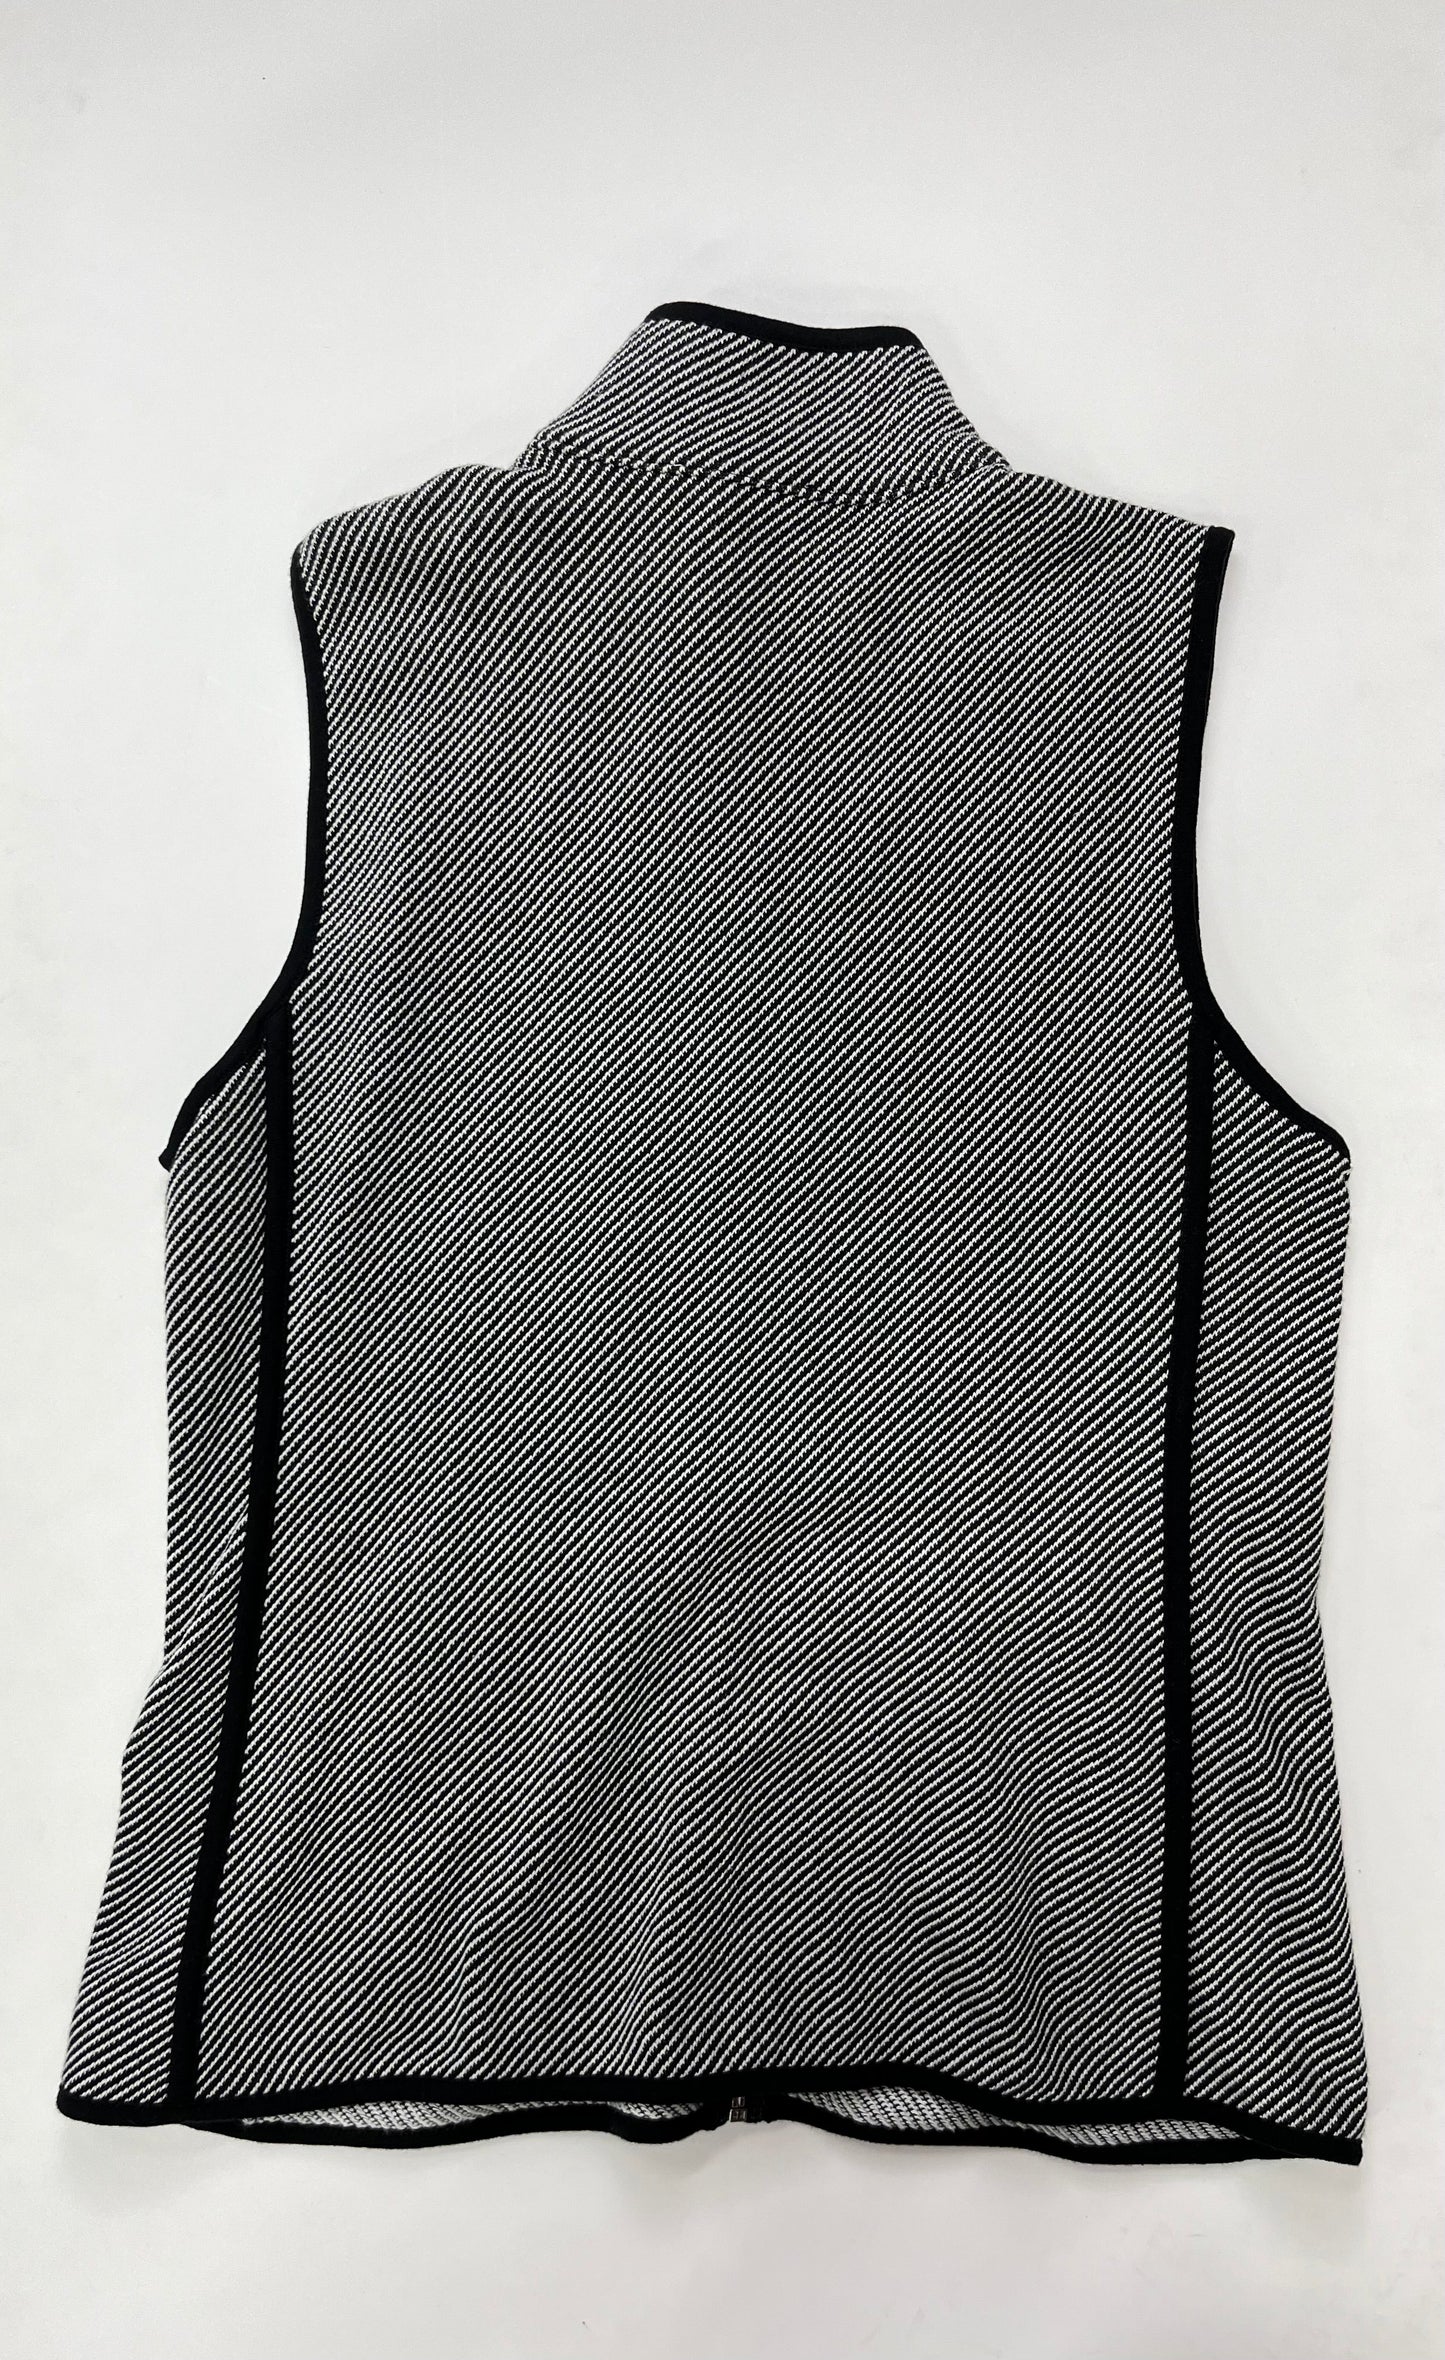 Vest By Talbots  Size: L